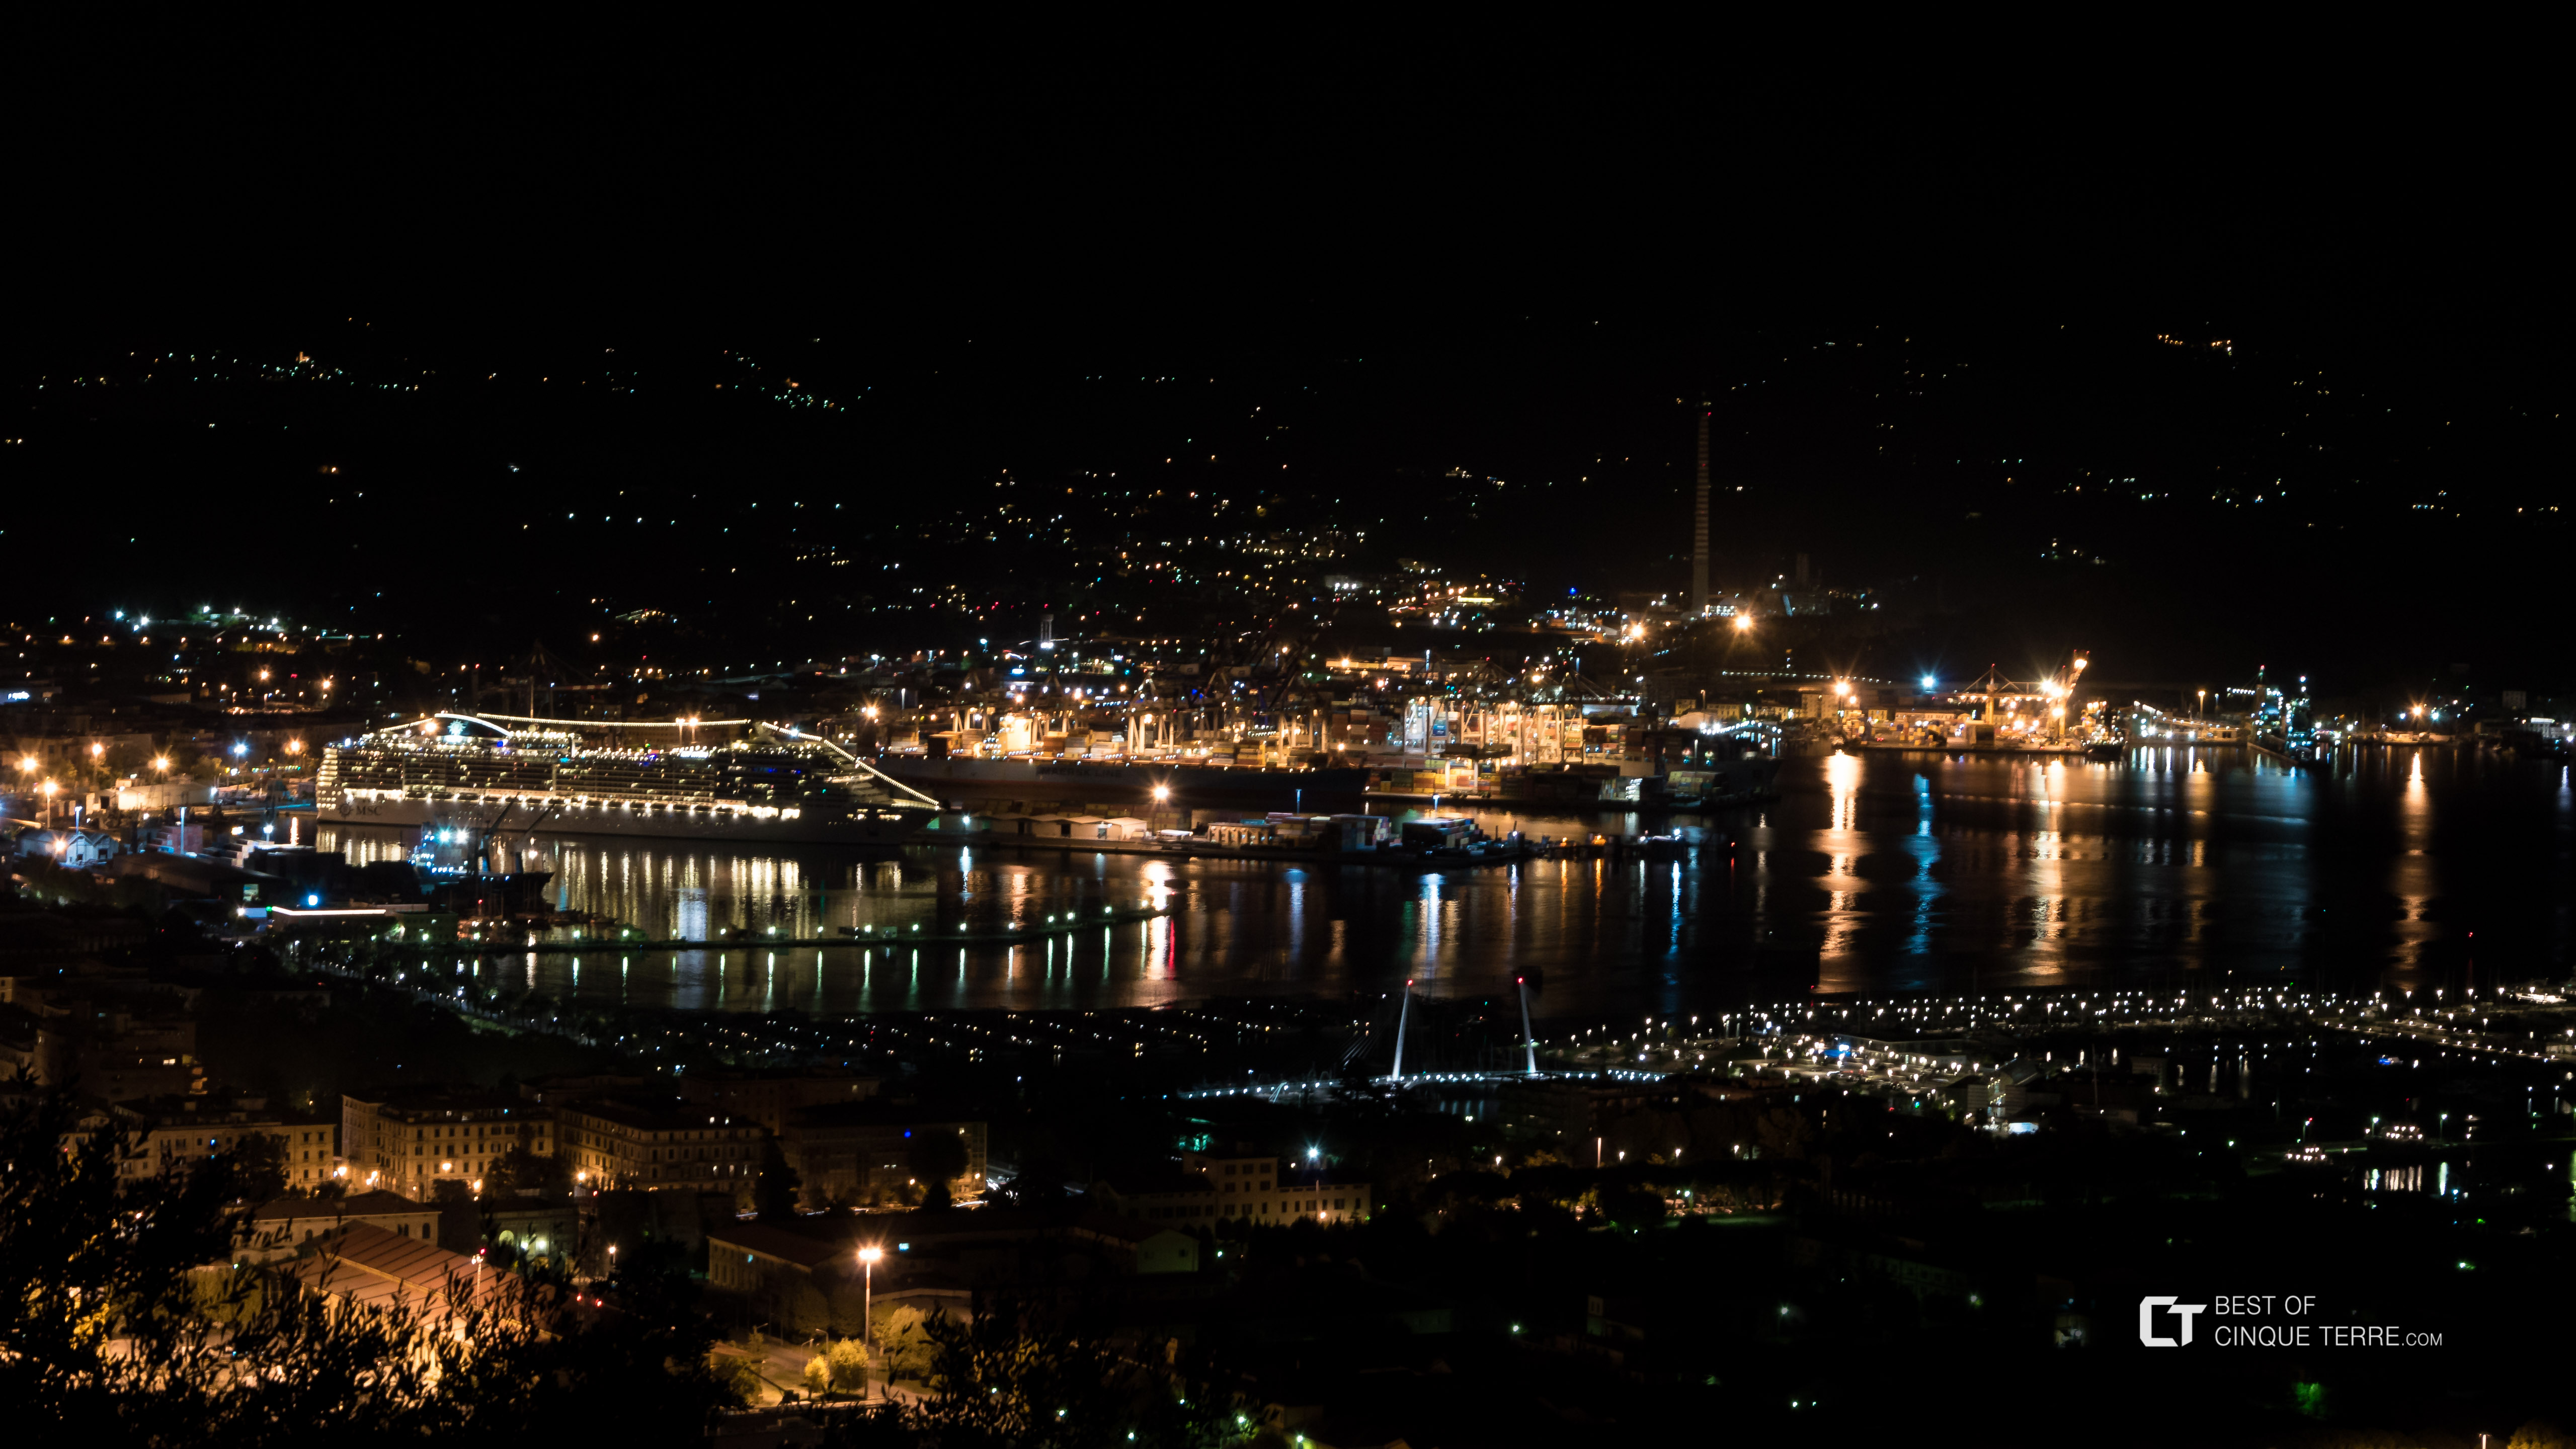 Vista nocturna desde la calle hacia Riomaggiore, La Spezia, Italia